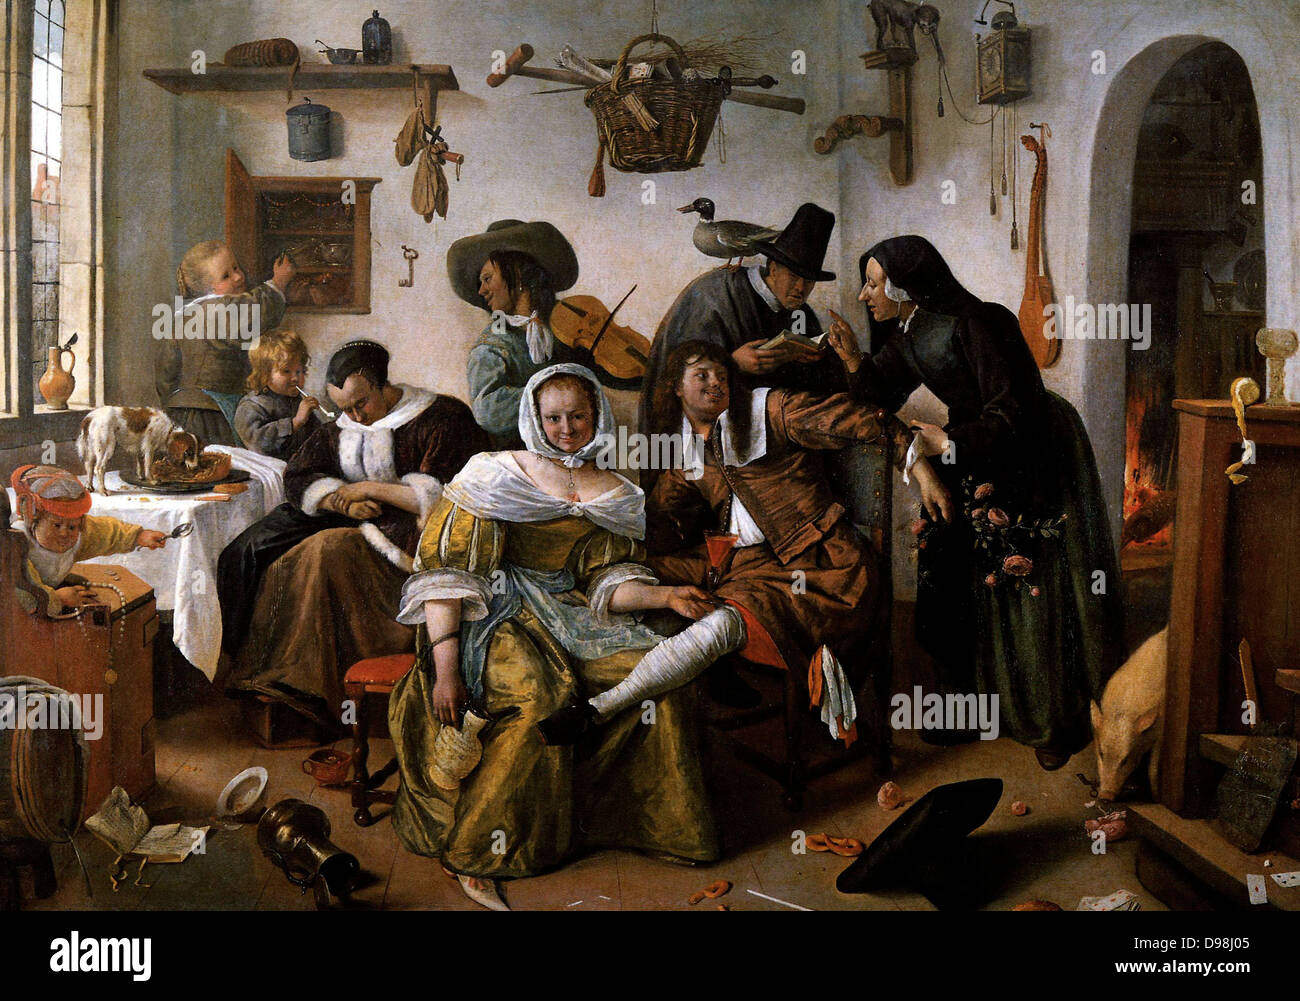 Il mondo capovolto, Jan Steen (1663) Jan Havickszoon Steen (c. 1626 - sepolto 3 febbraio 1679) era un genere olandese pittore del XVII secolo (noto anche come epoca aurea olandese). Psicologia, senso dell'umorismo e abbondanza di colore sono segni del suo commercio. Foto Stock